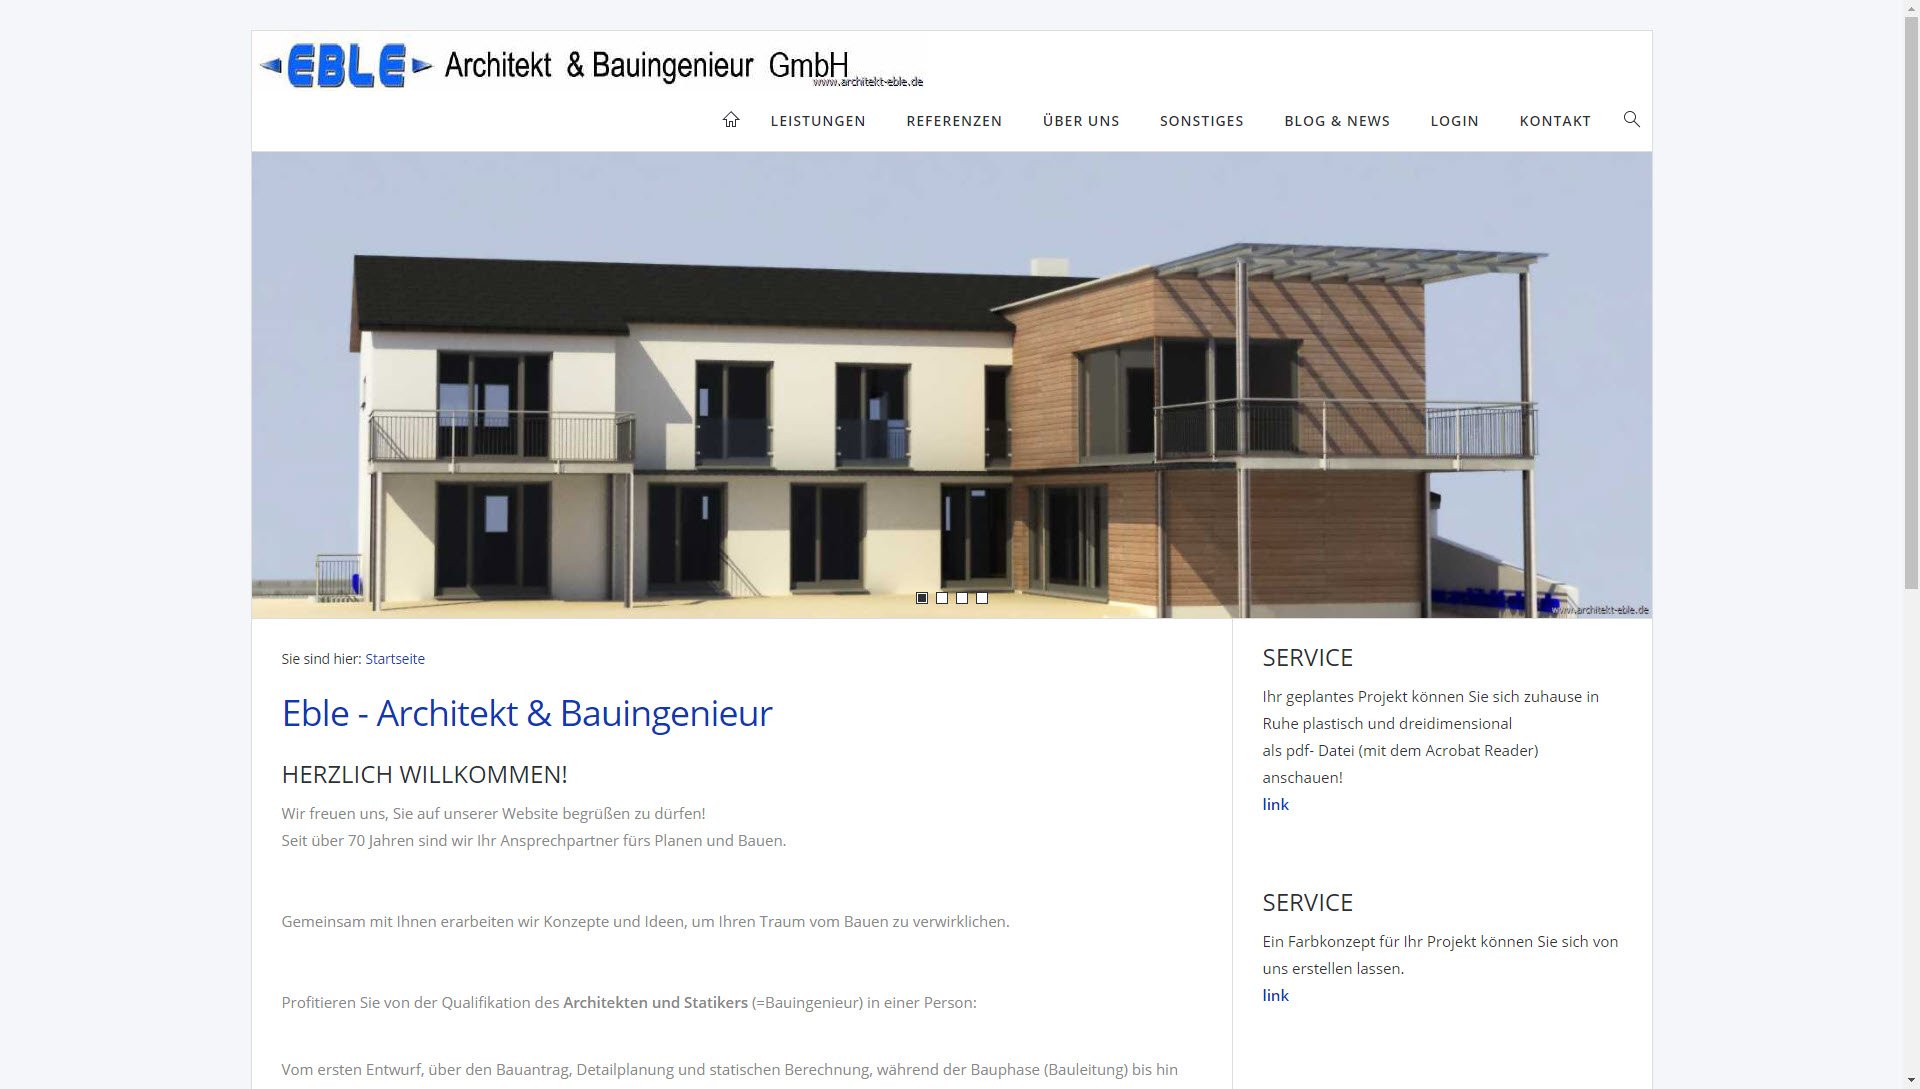 Eble, Architekt & Bauingenieur GmbH